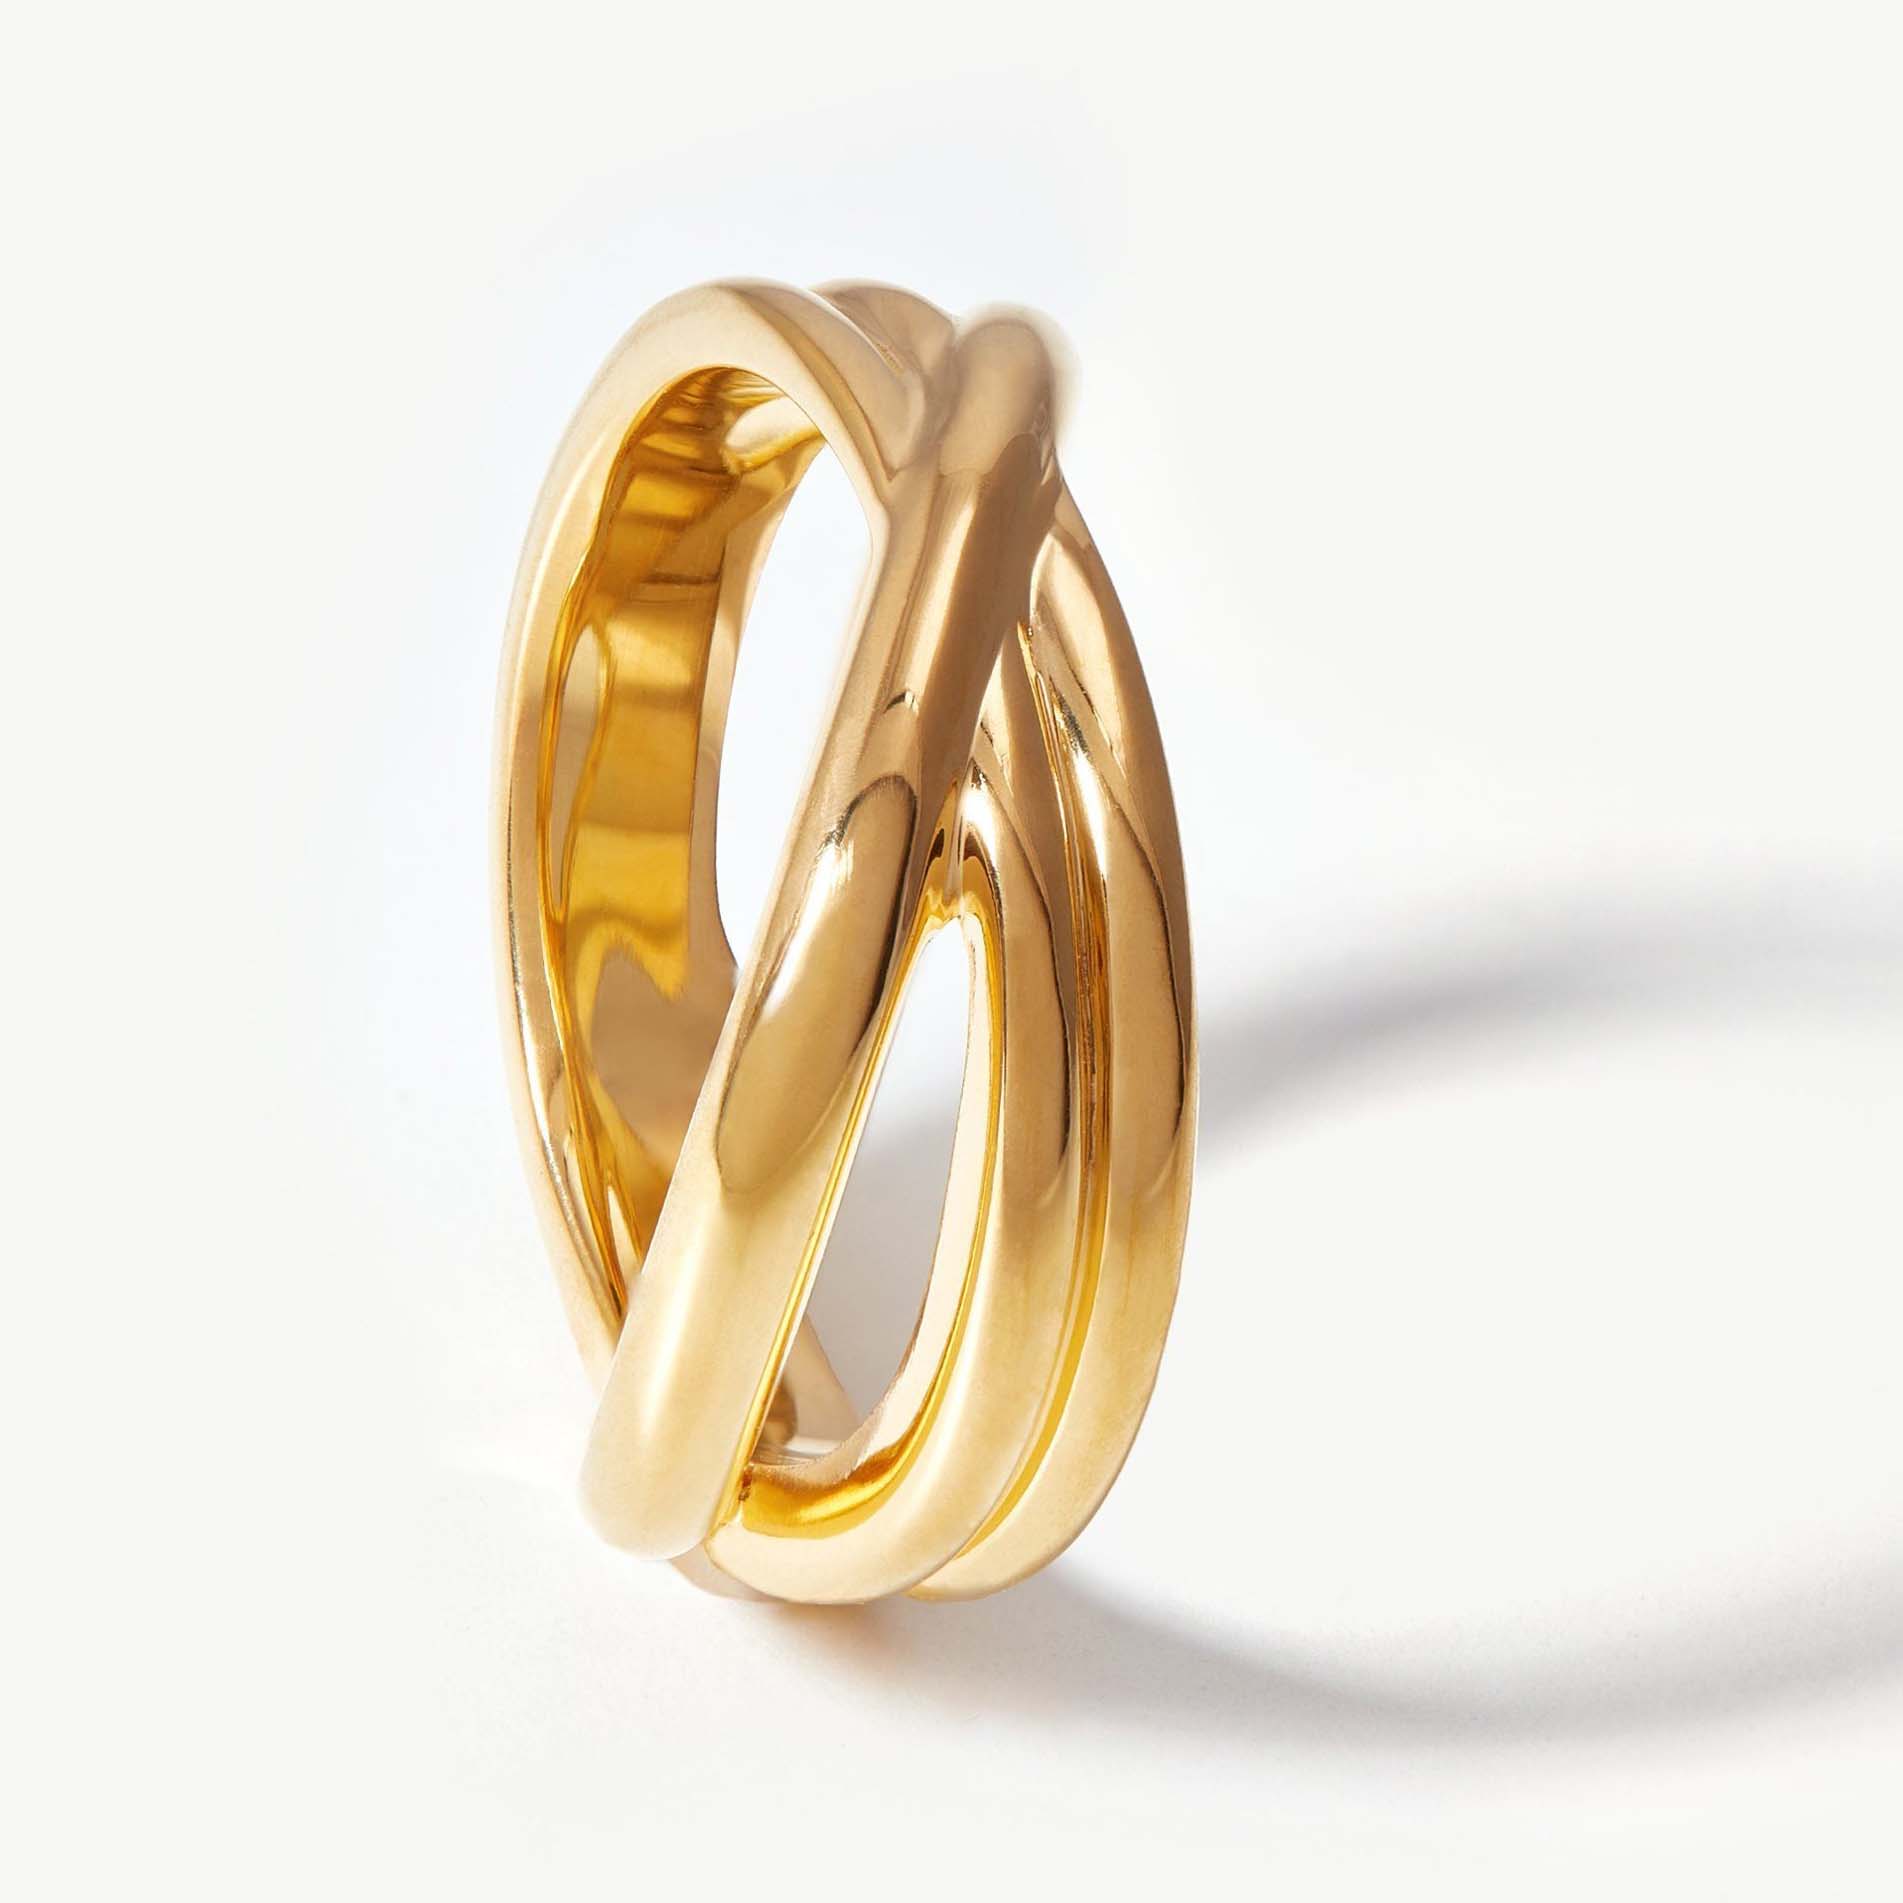 Zakázková výroba prstenu pozlaceného 18k zlatem na mincovním stříbře za konkurenceschopnou cenu